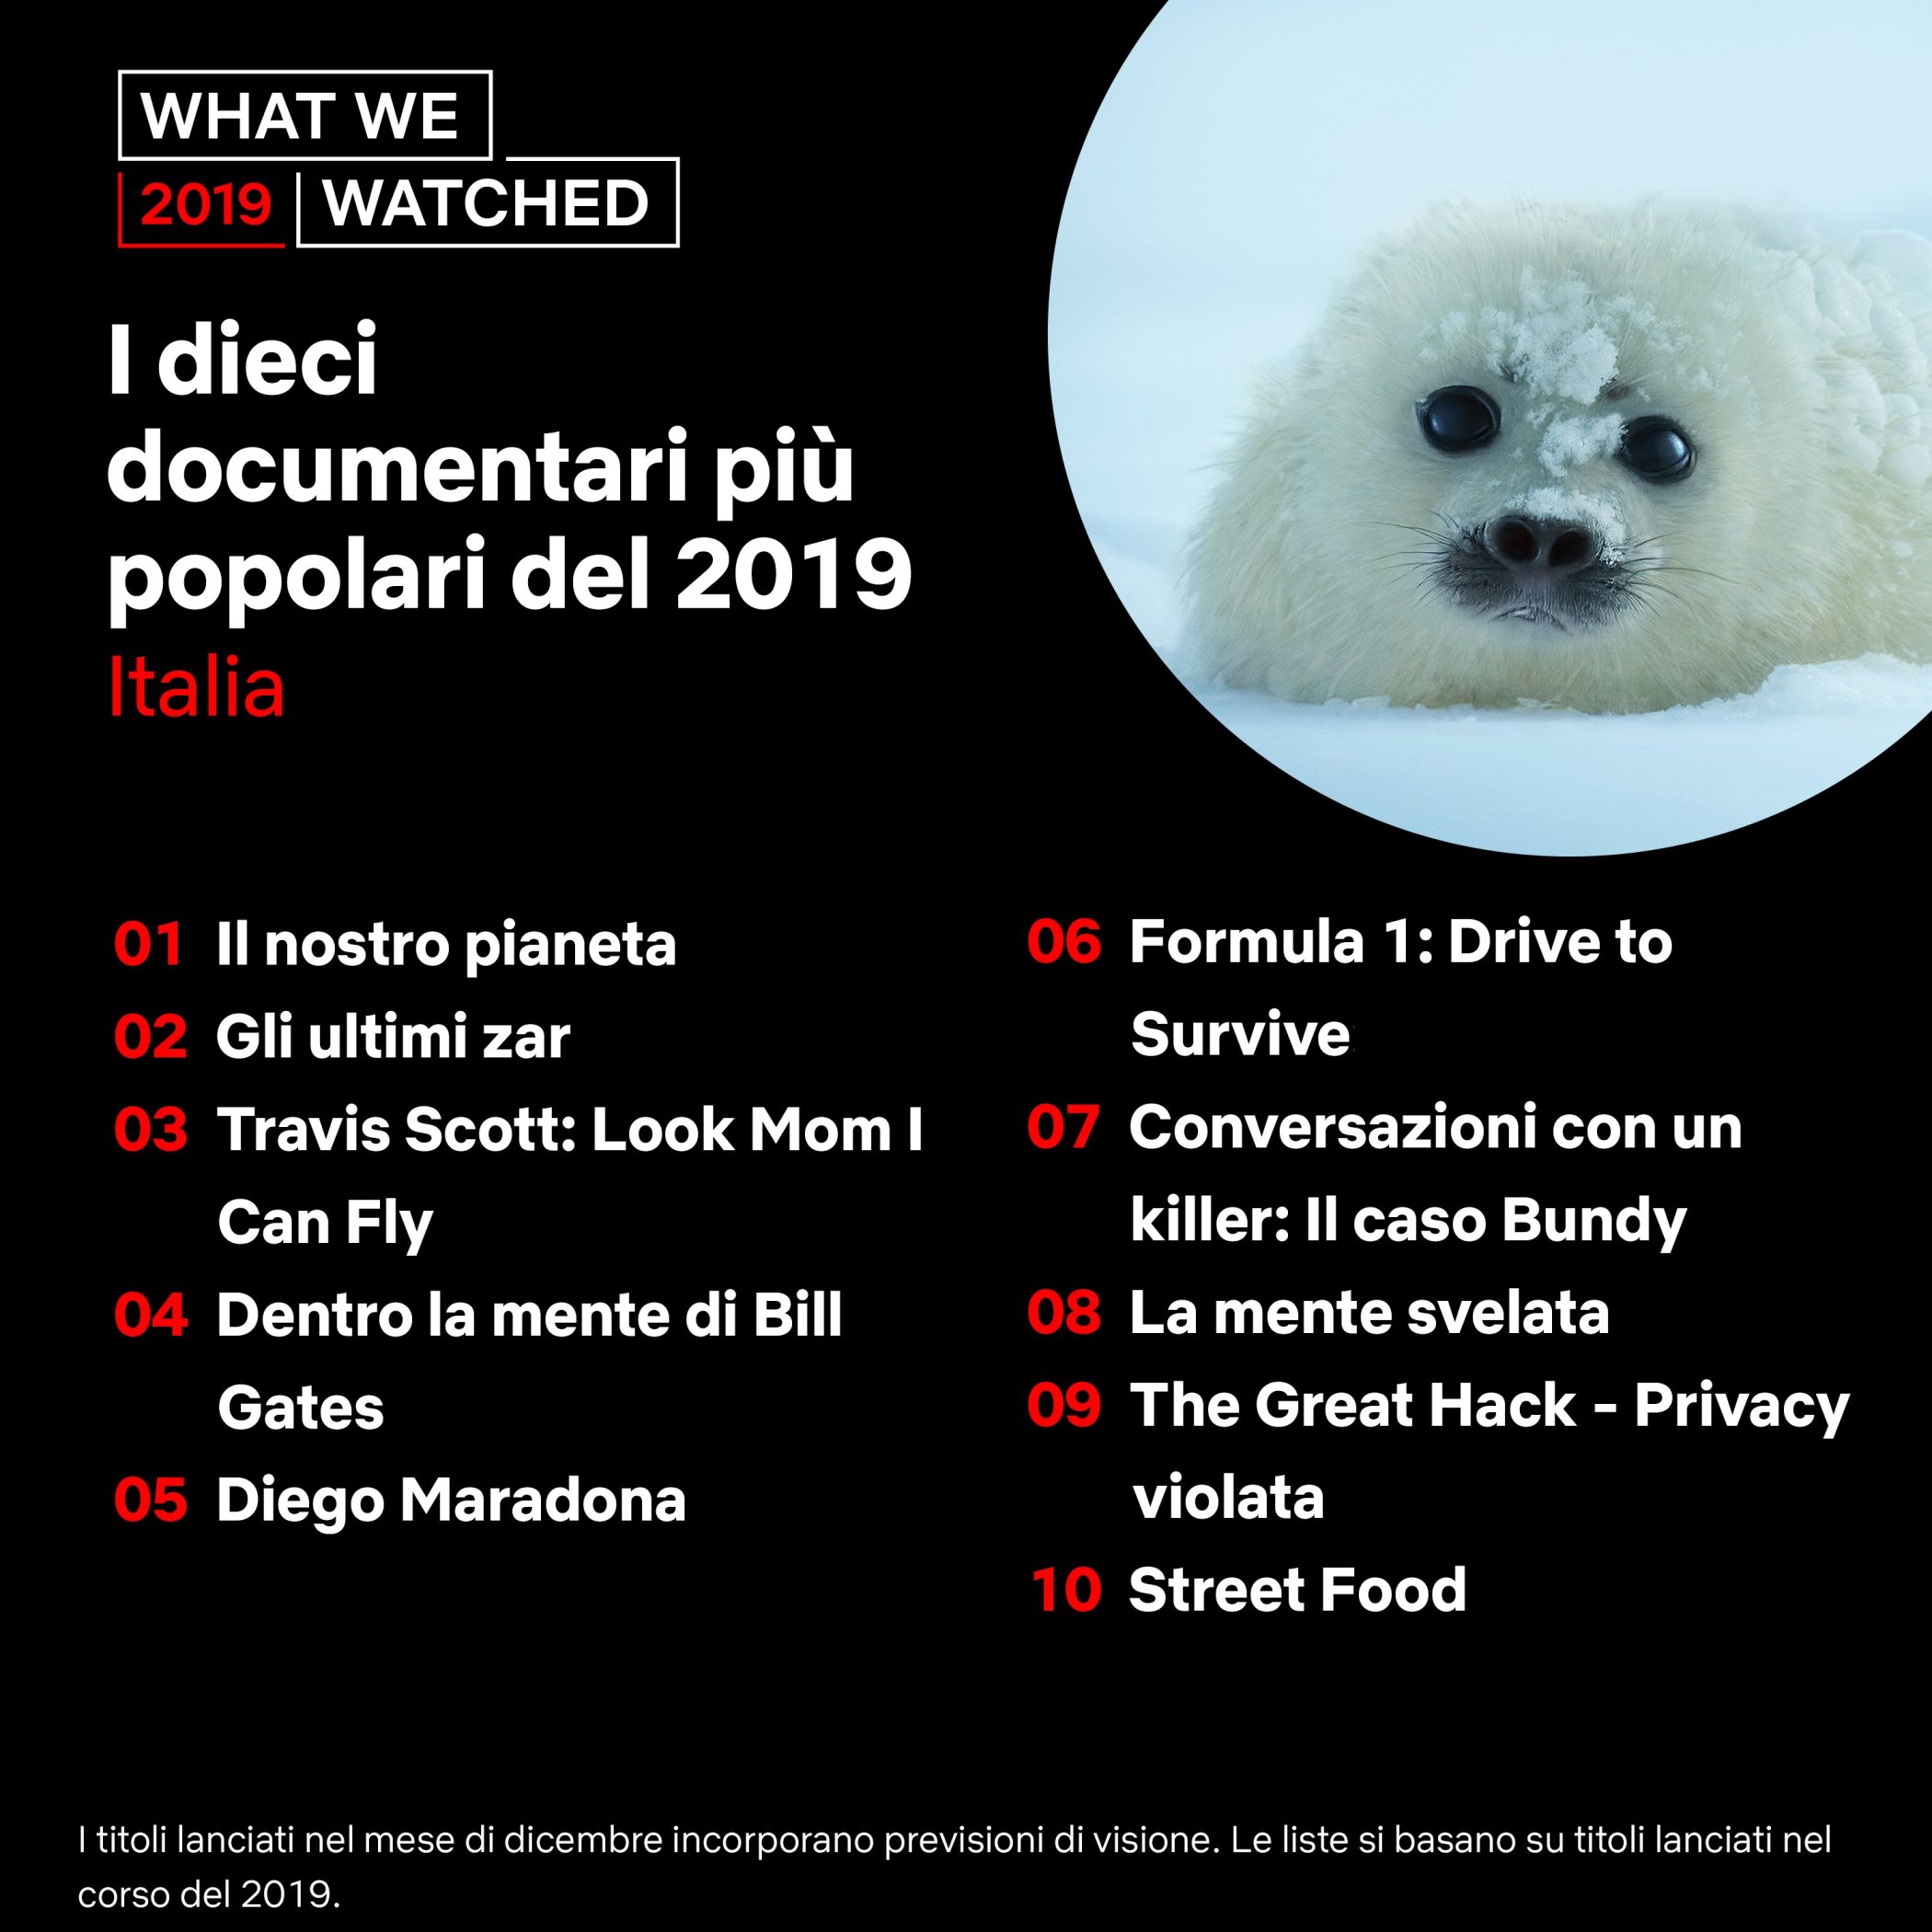 I dieci documentari più popolari del 2019 su Netflix in Italia